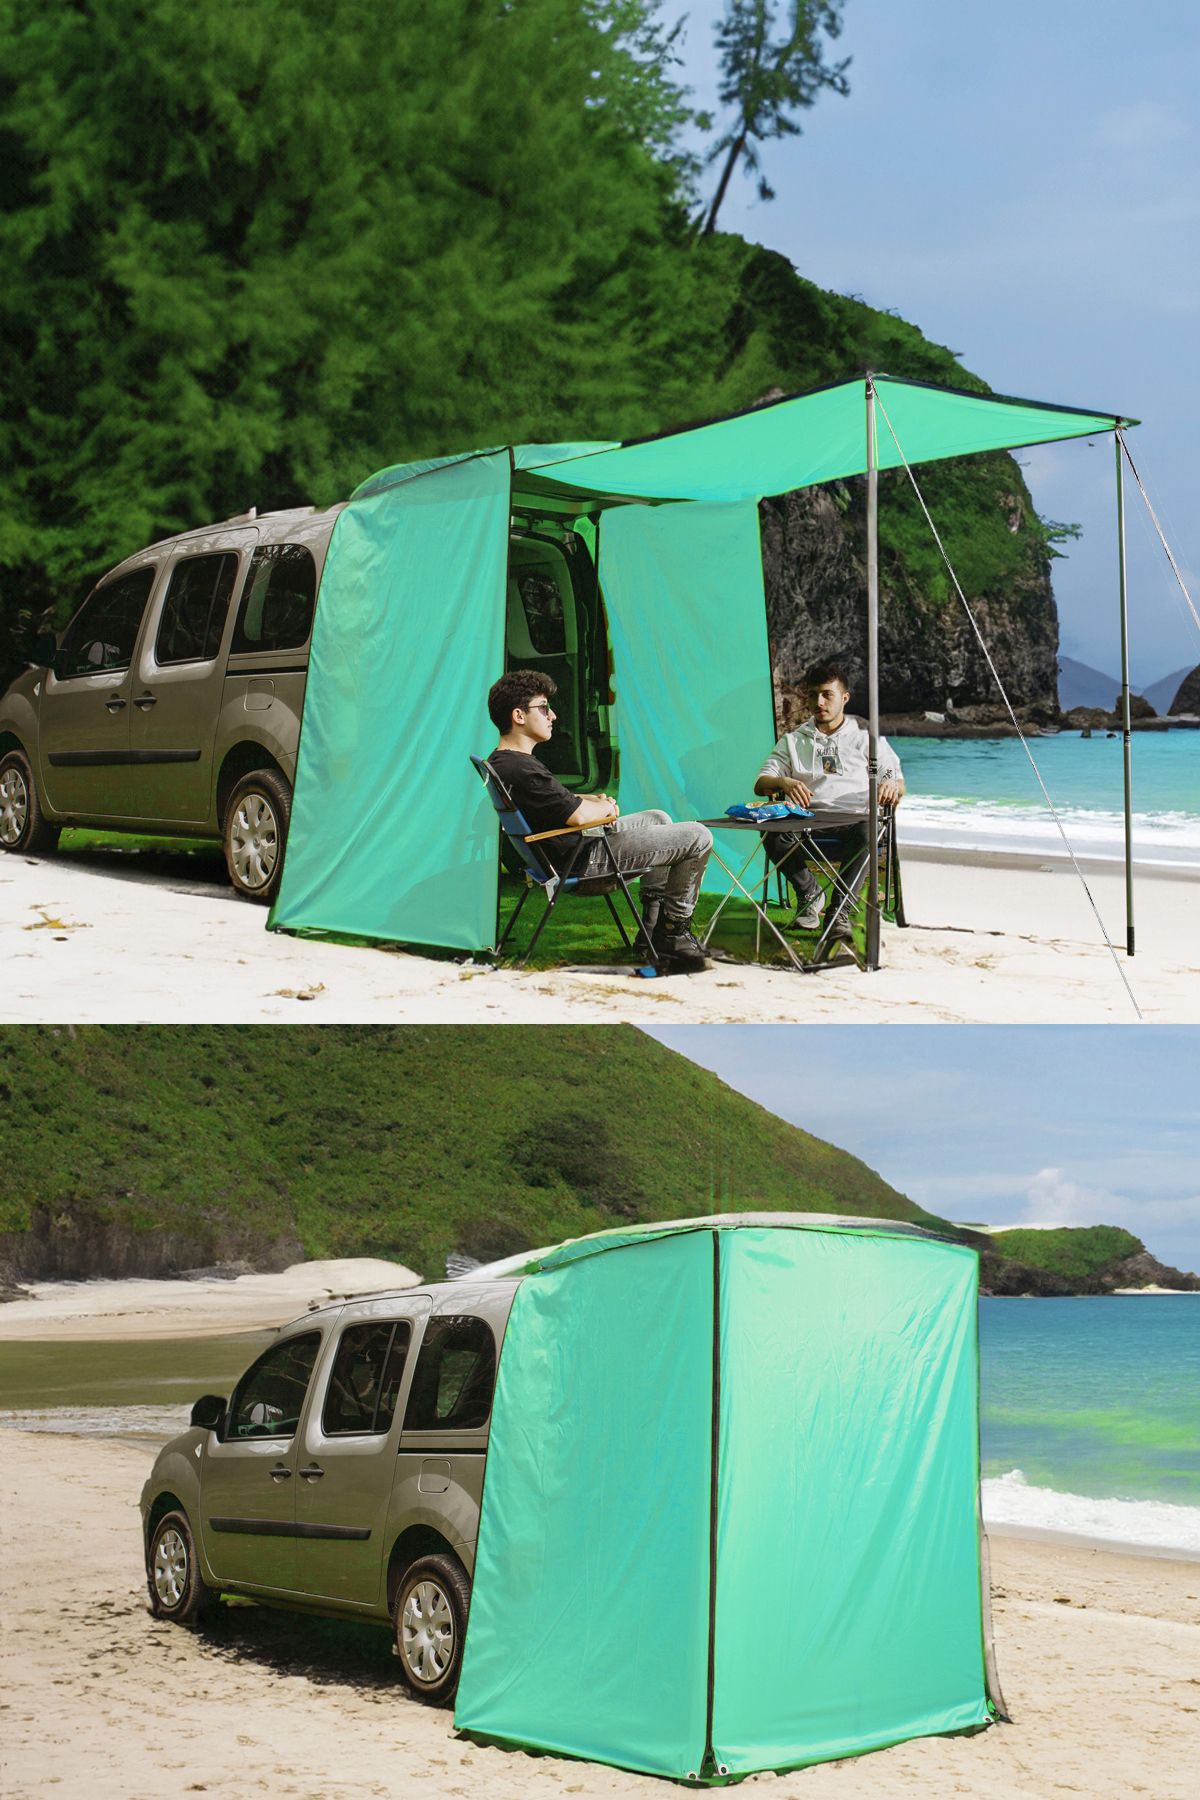 Nurnivus Tent Plus Araç Kamp Çadırı Tente Gölgelik Katlanır Çok Amaçlı Araç üstü Branda Piknik Plaj Çadırı